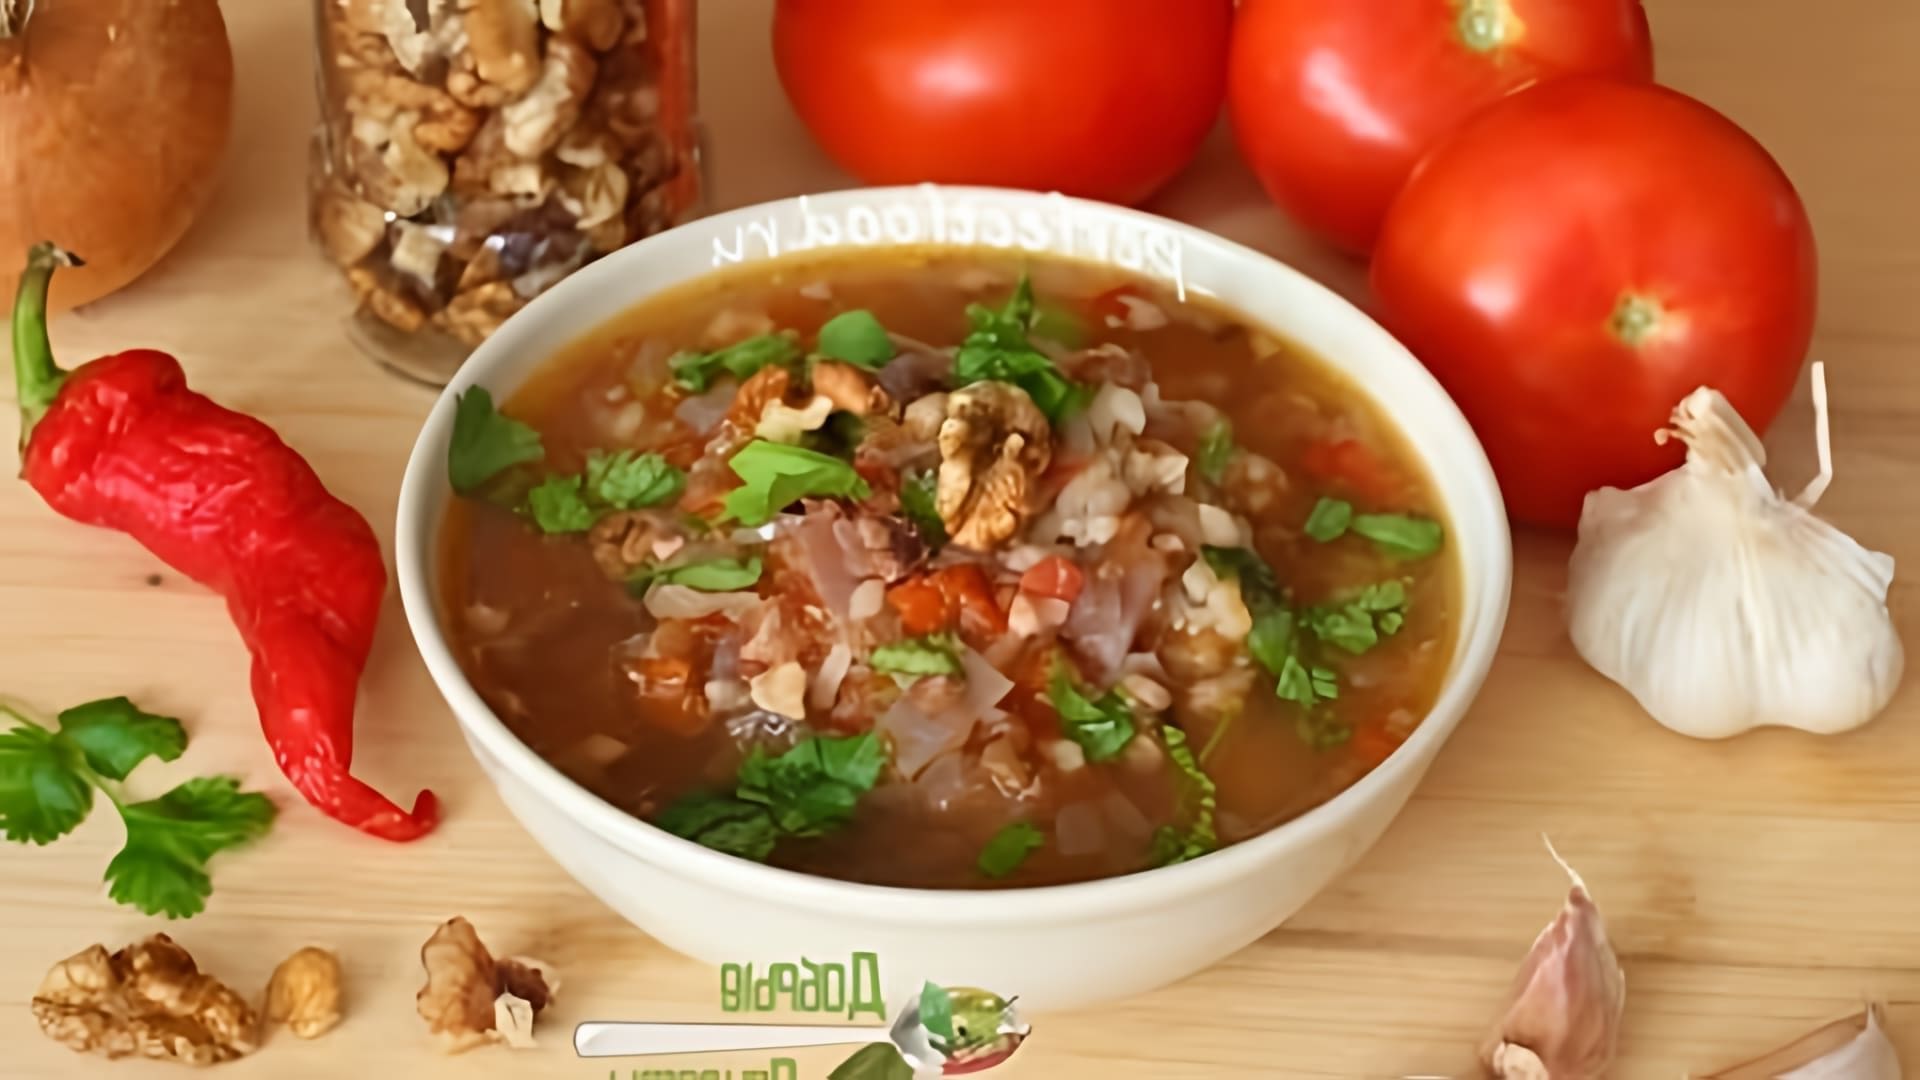 В этом видео демонстрируется рецепт приготовления супа харчо с грецкими орехами и рисом